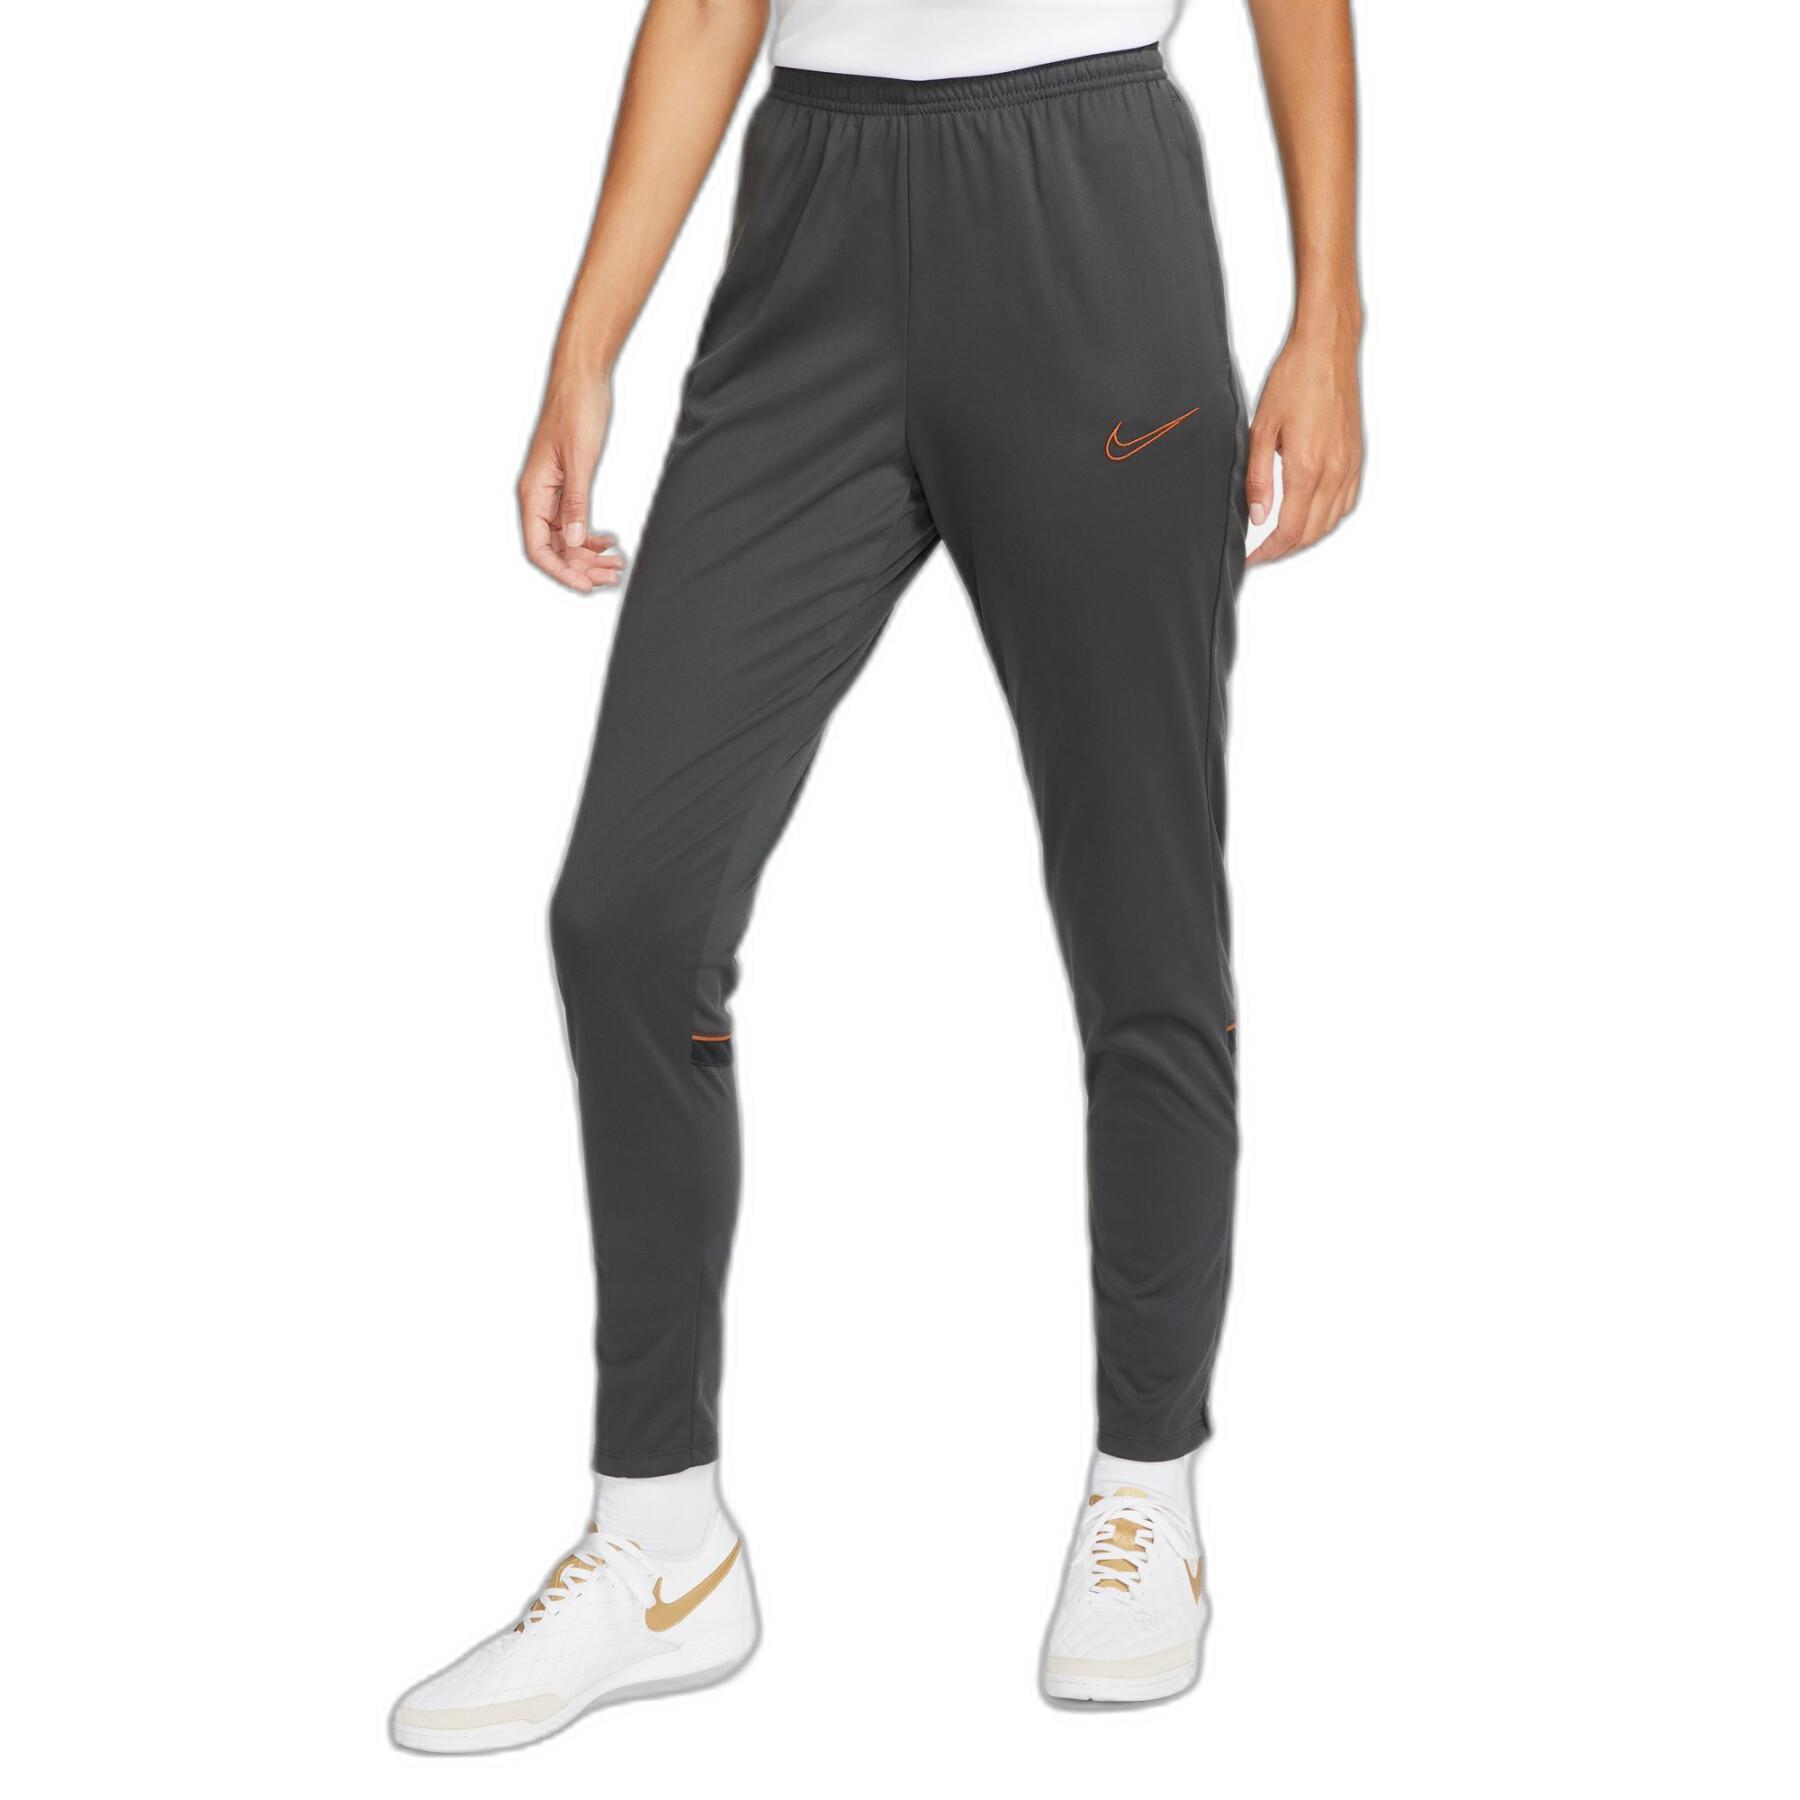 Jogginganzug für Frauen Nike Dri-Fit Academy